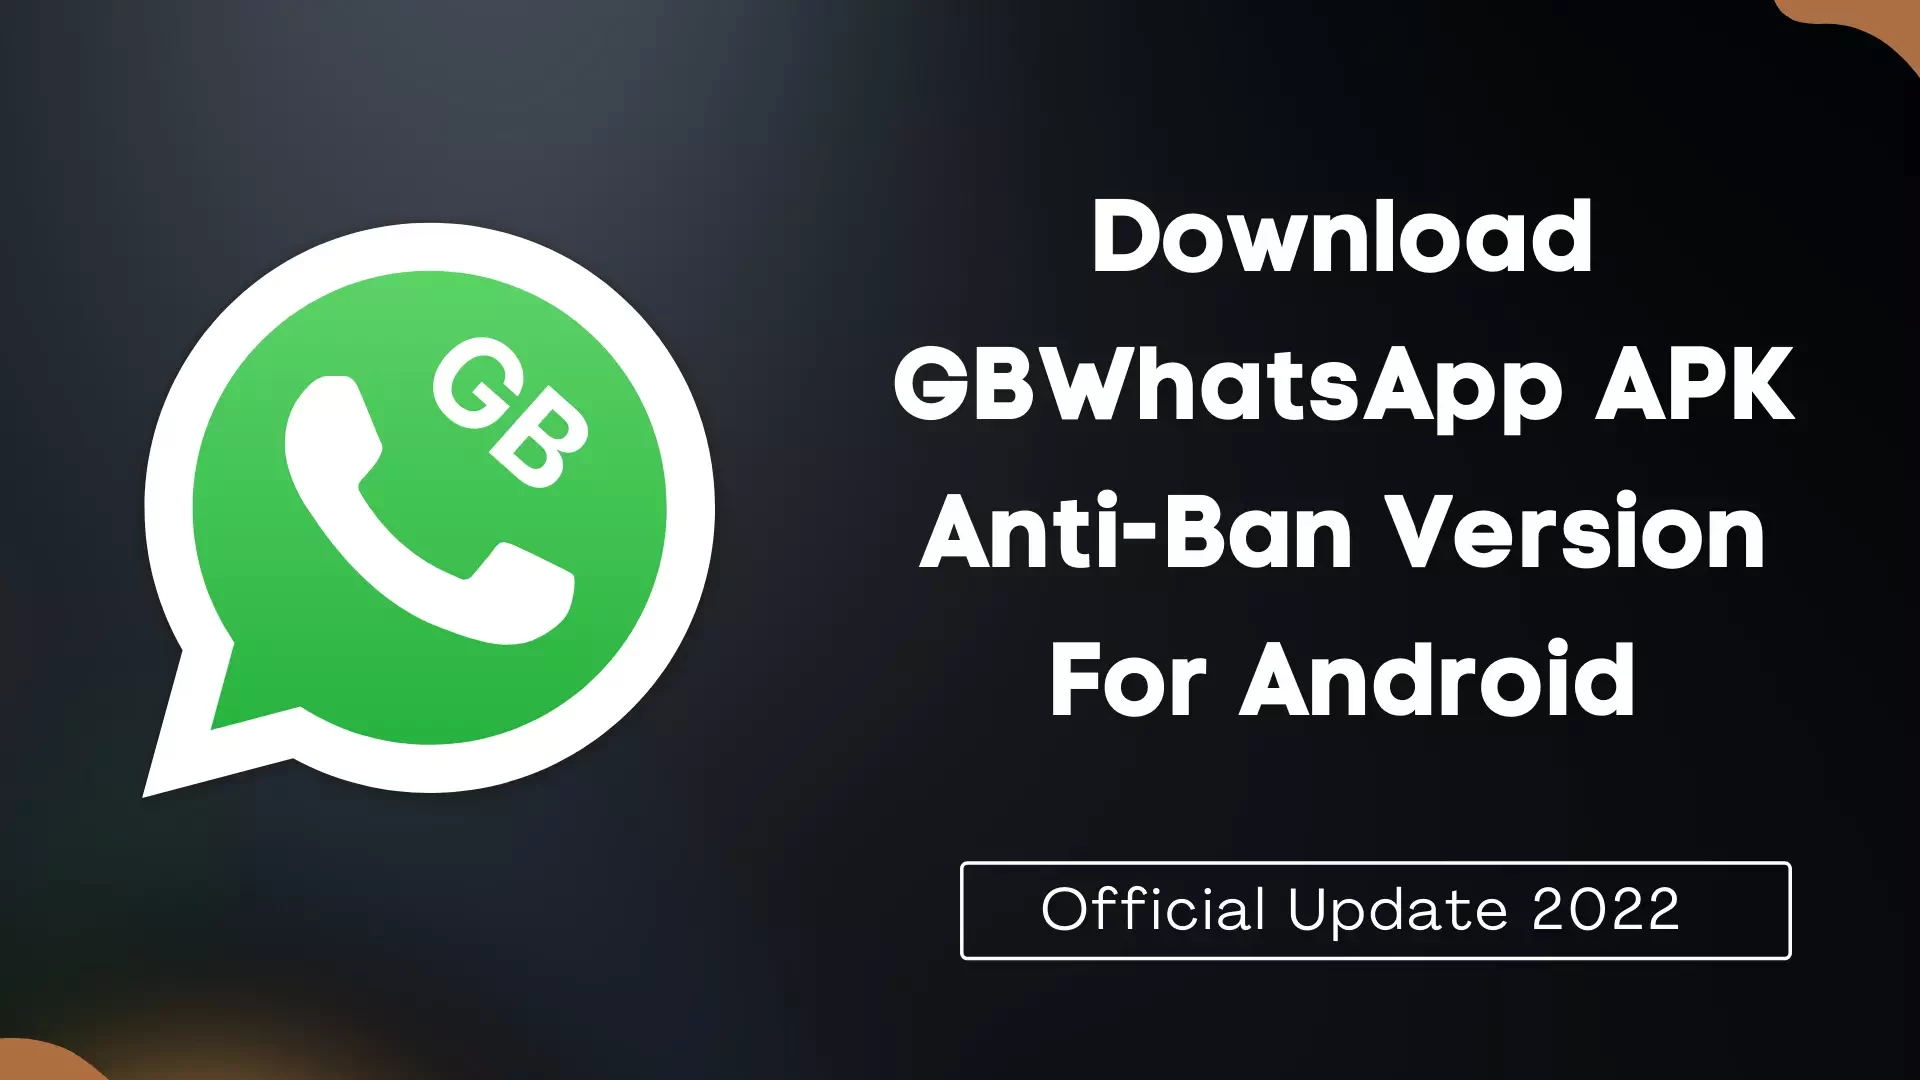 GBWhatsApp APK Anti-Ban Version Thumbnail